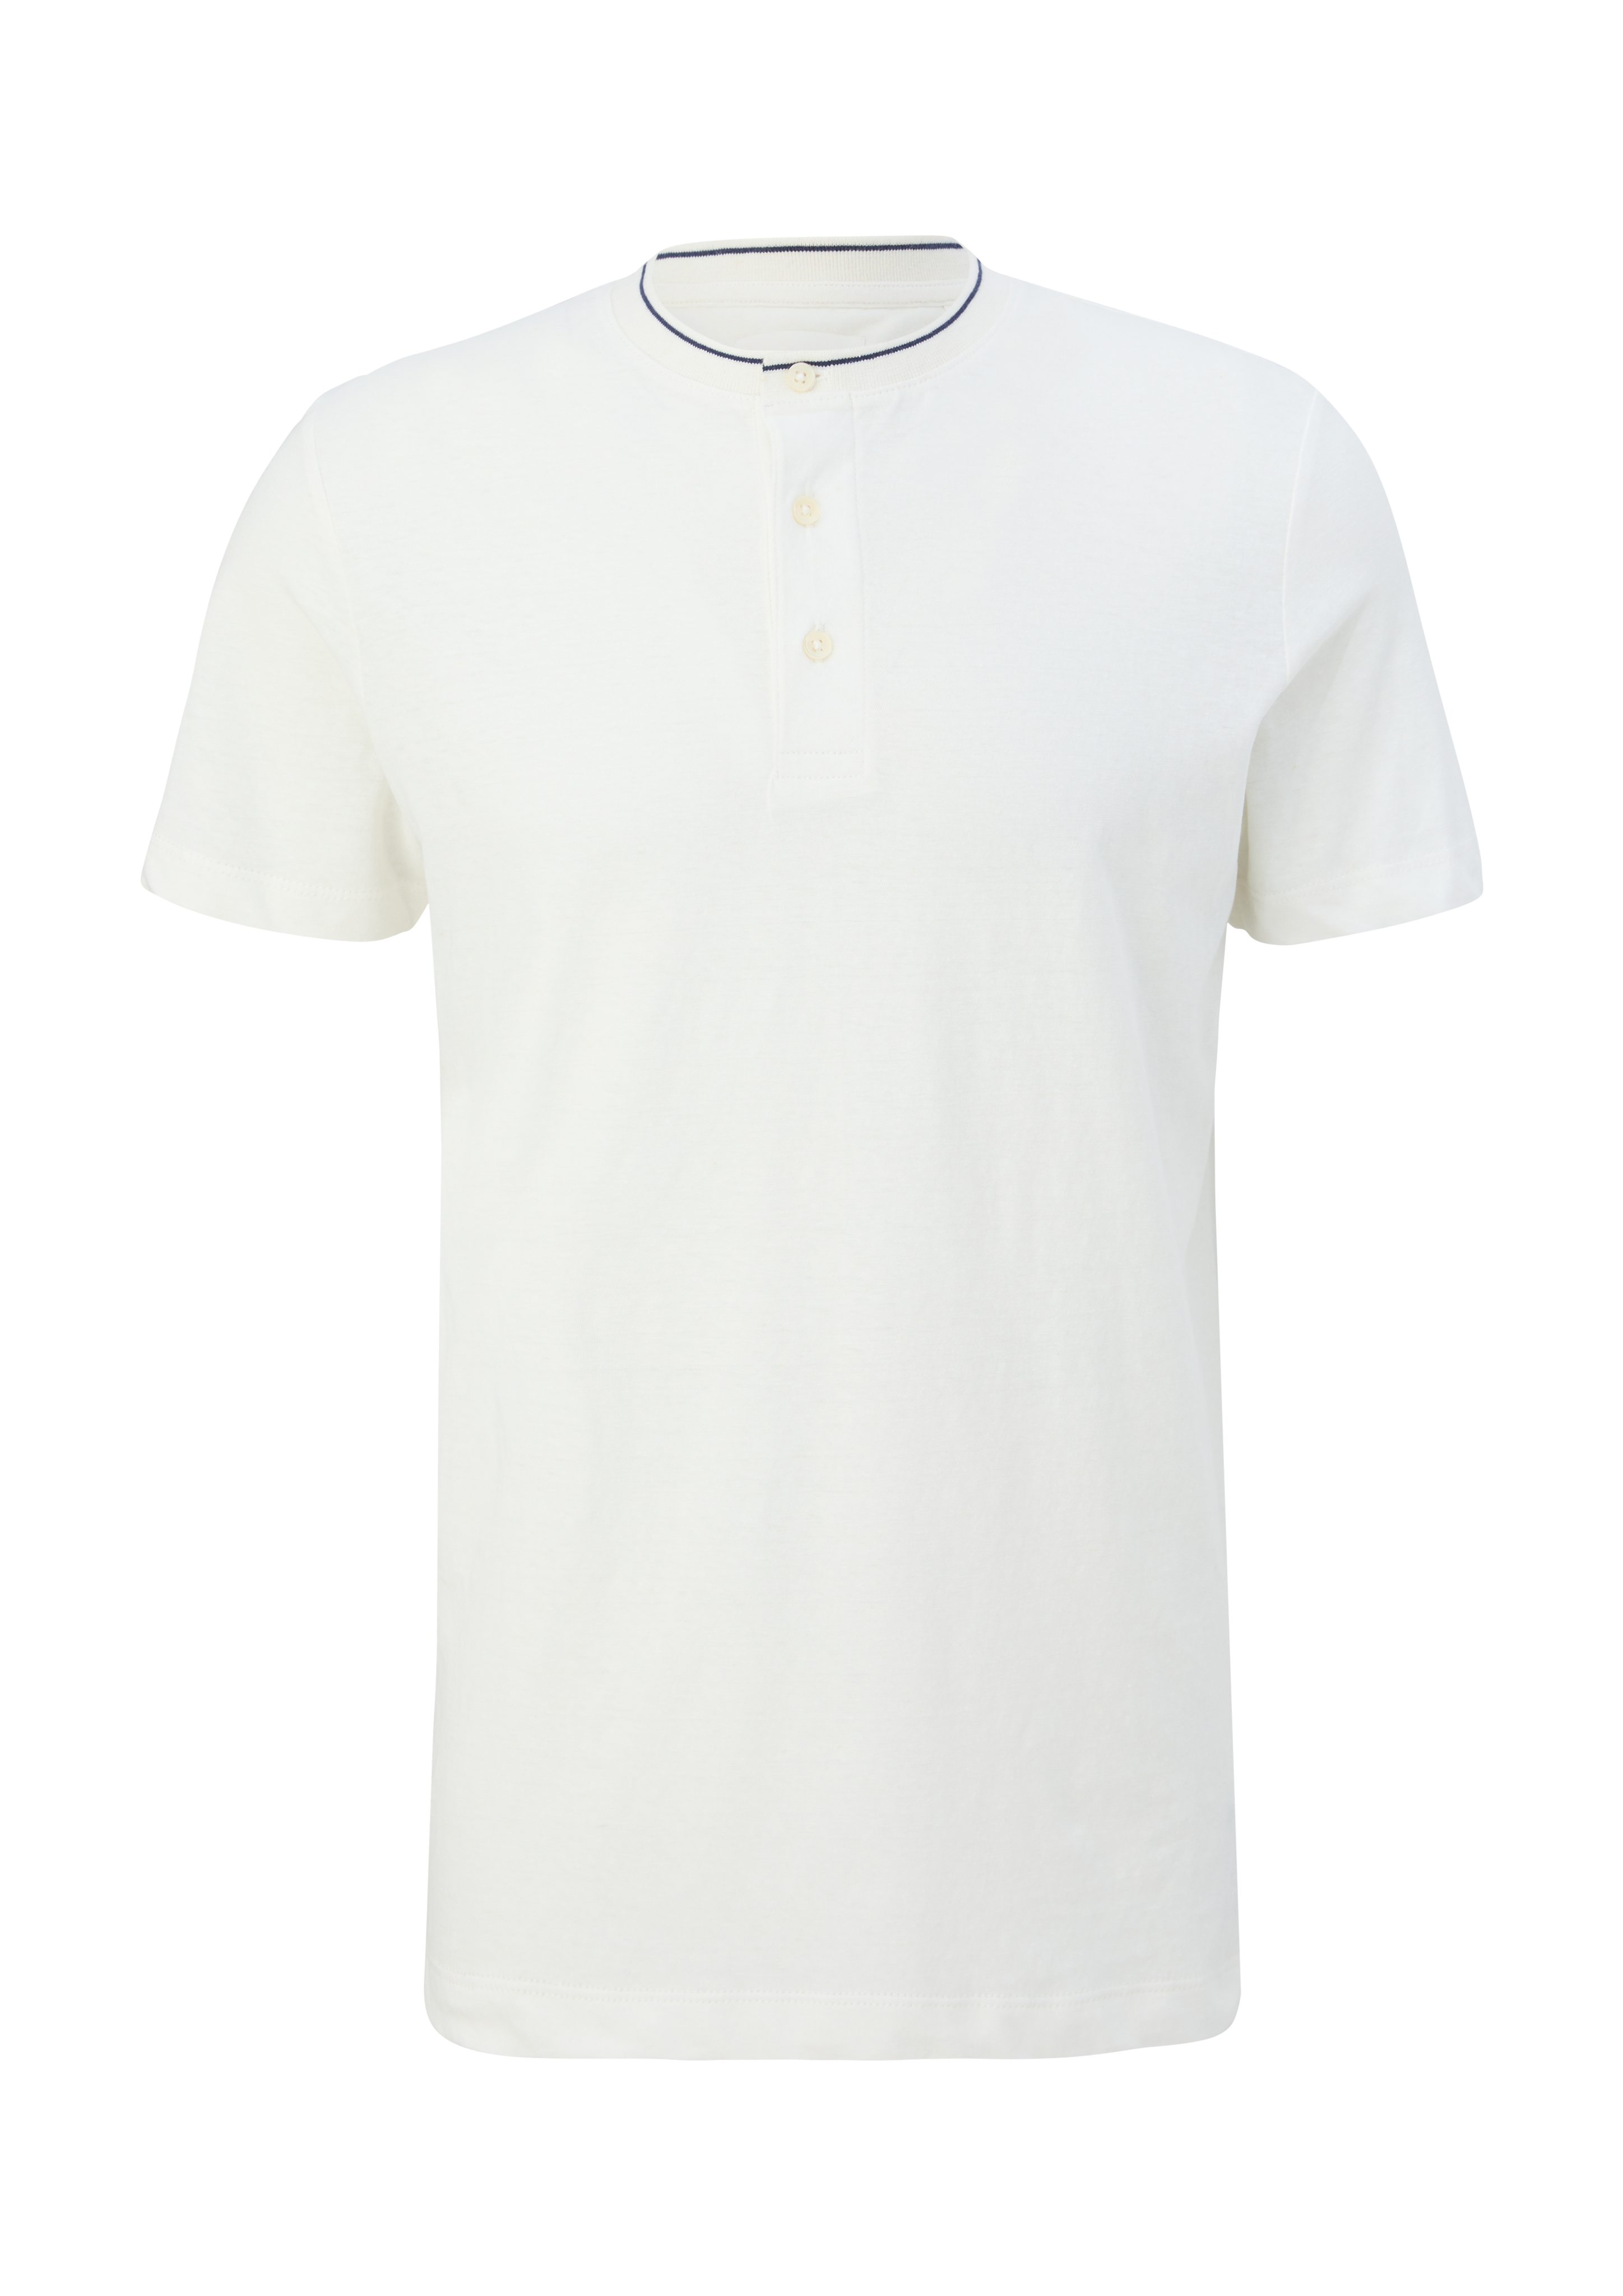 s.Oliver Kurzarmshirt mit Kontrast-Details weiß T-Shirt Henleyausschnitt